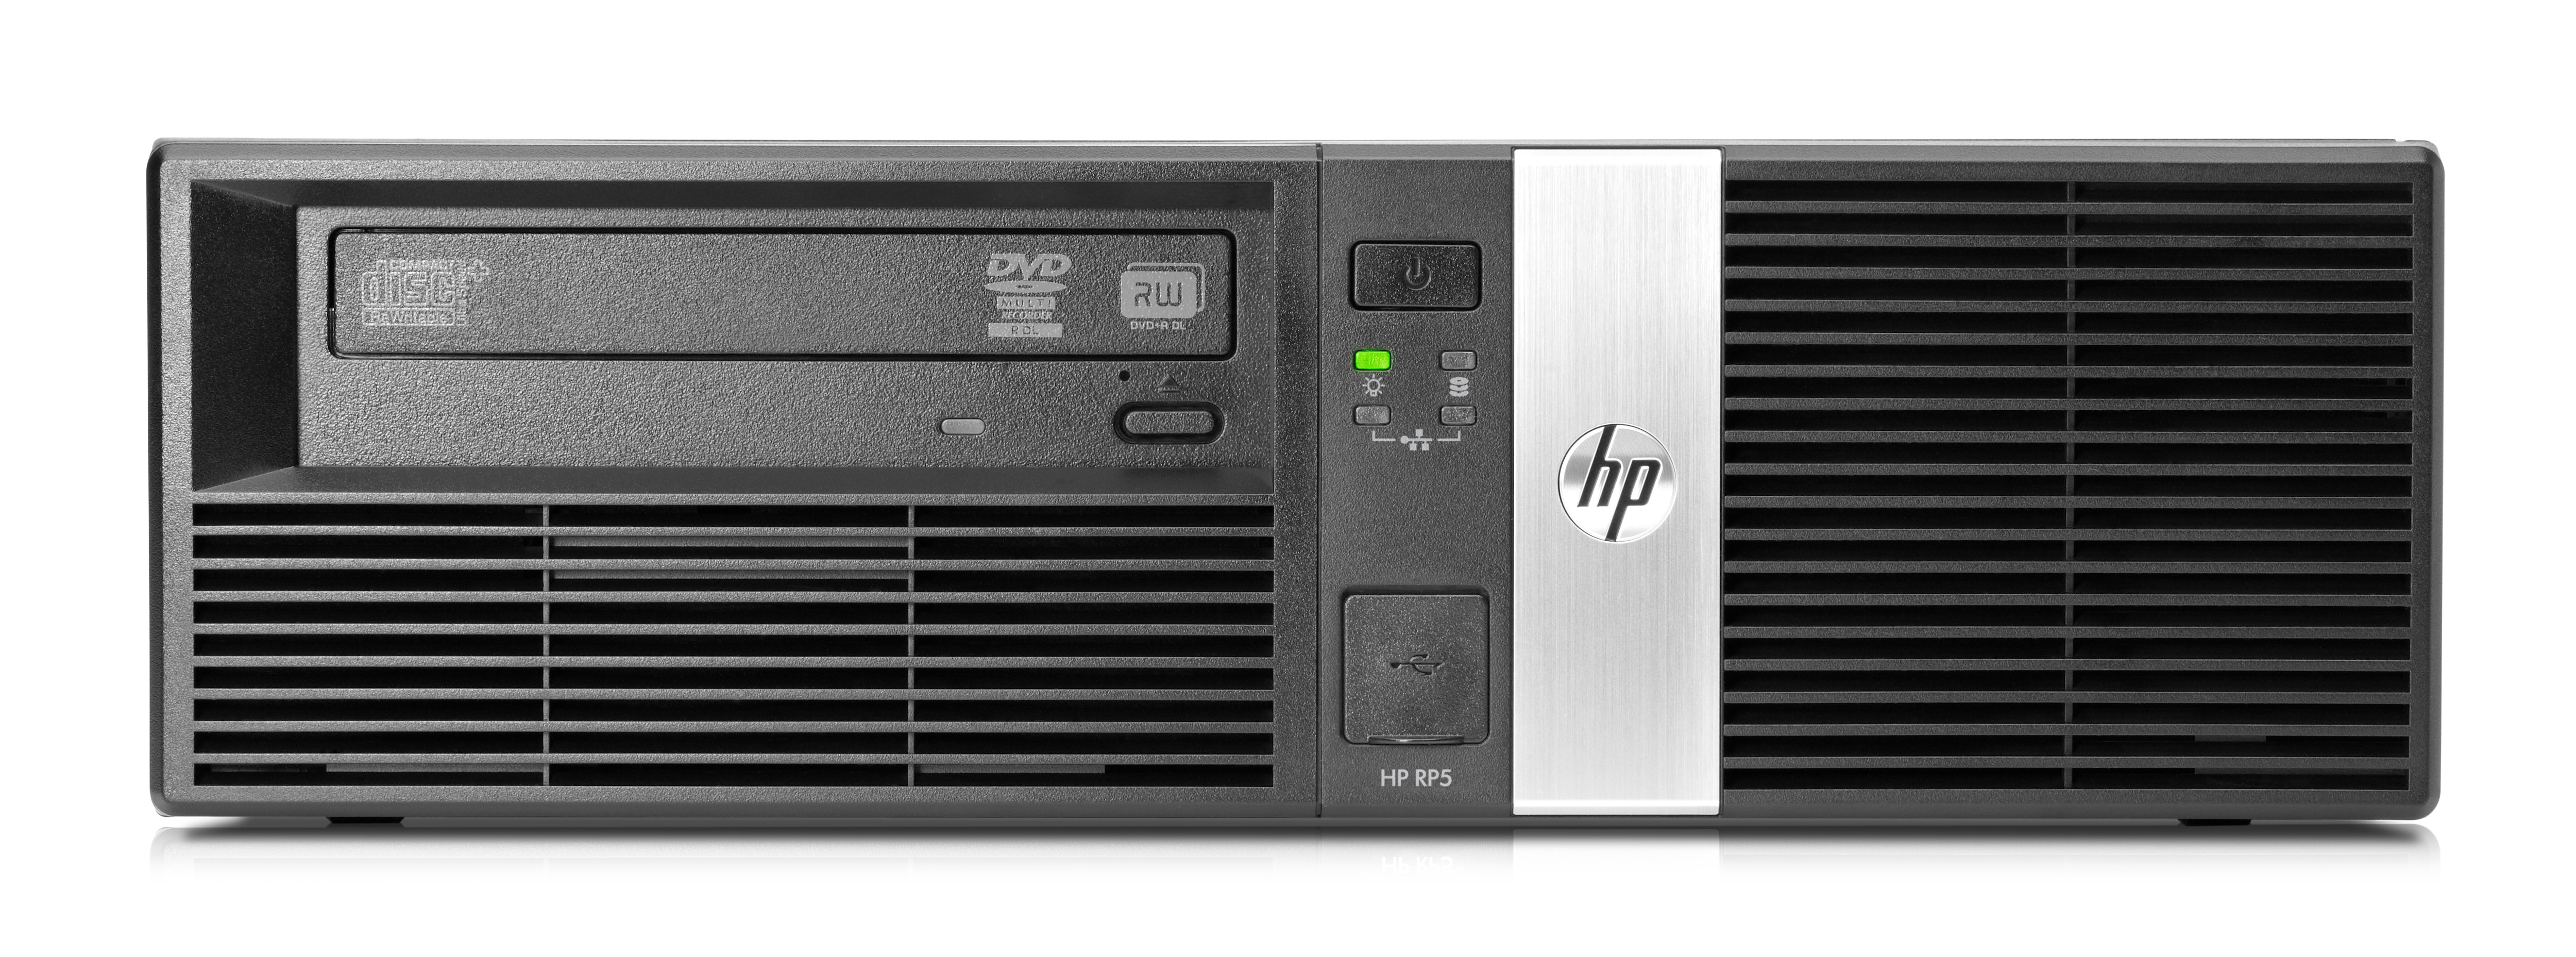 HP RP5 butiksdatasystem modell 5810